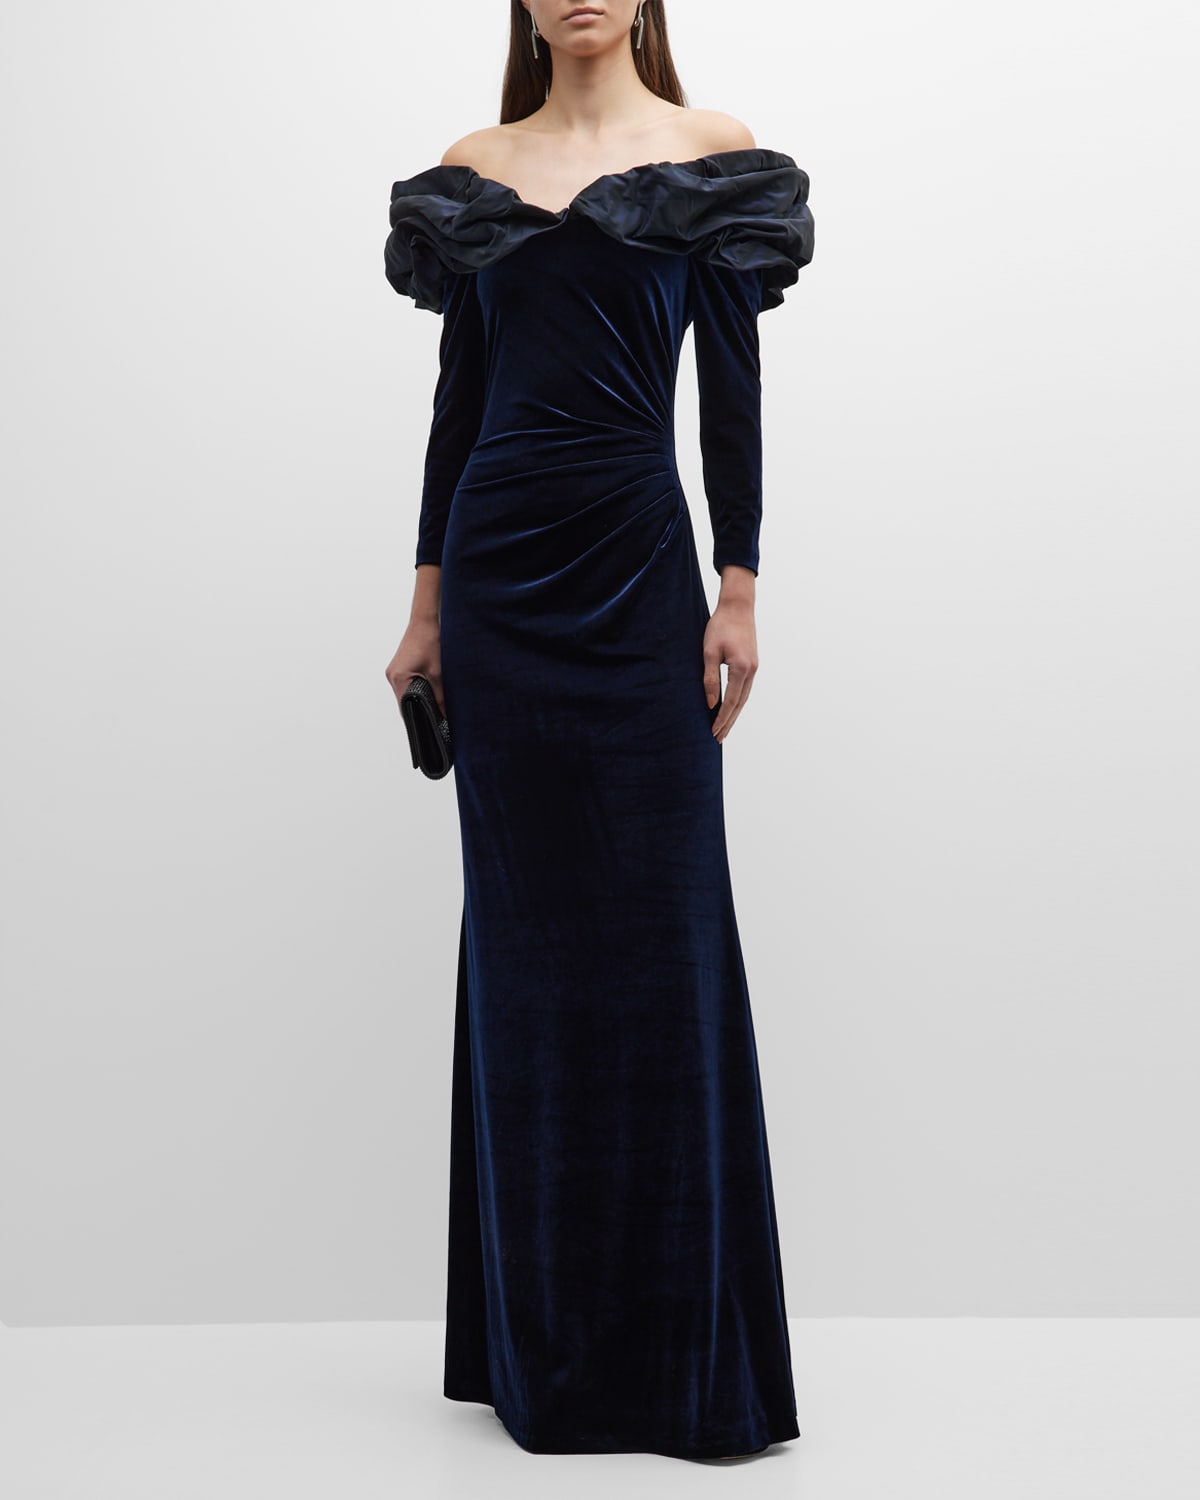 Rickie Freeman for Teri Jon Draped Sequin Velvet Gown | Neiman Marcus